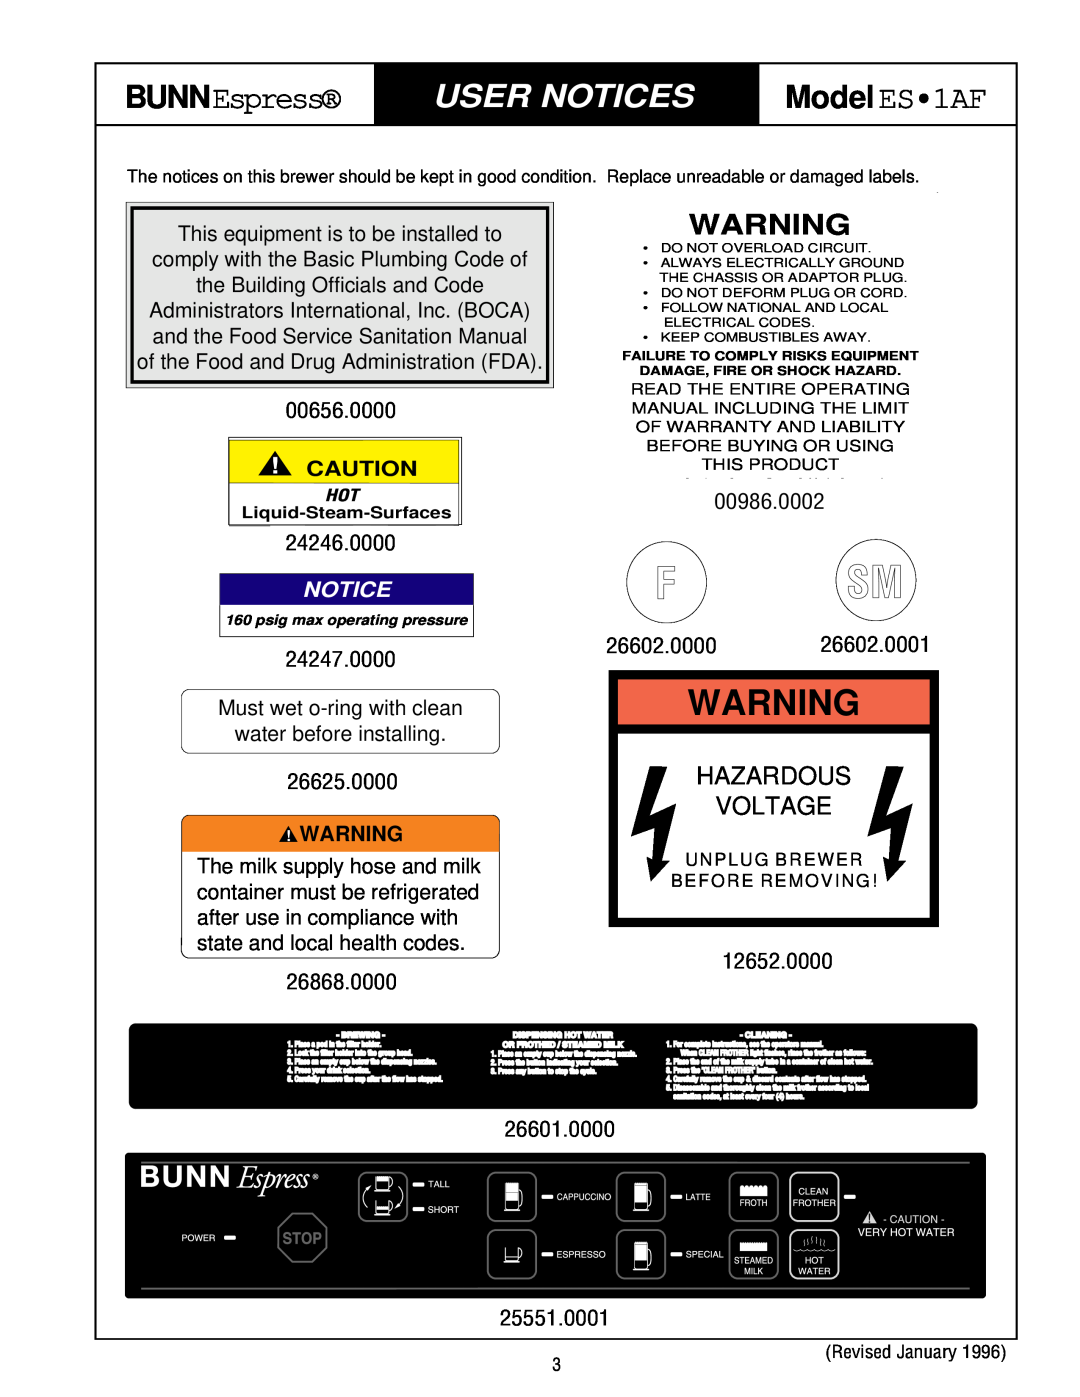 Bunn service manual User Notices, Hazardous Voltage, F Sm, BUNNEspress, Model ES1AF 